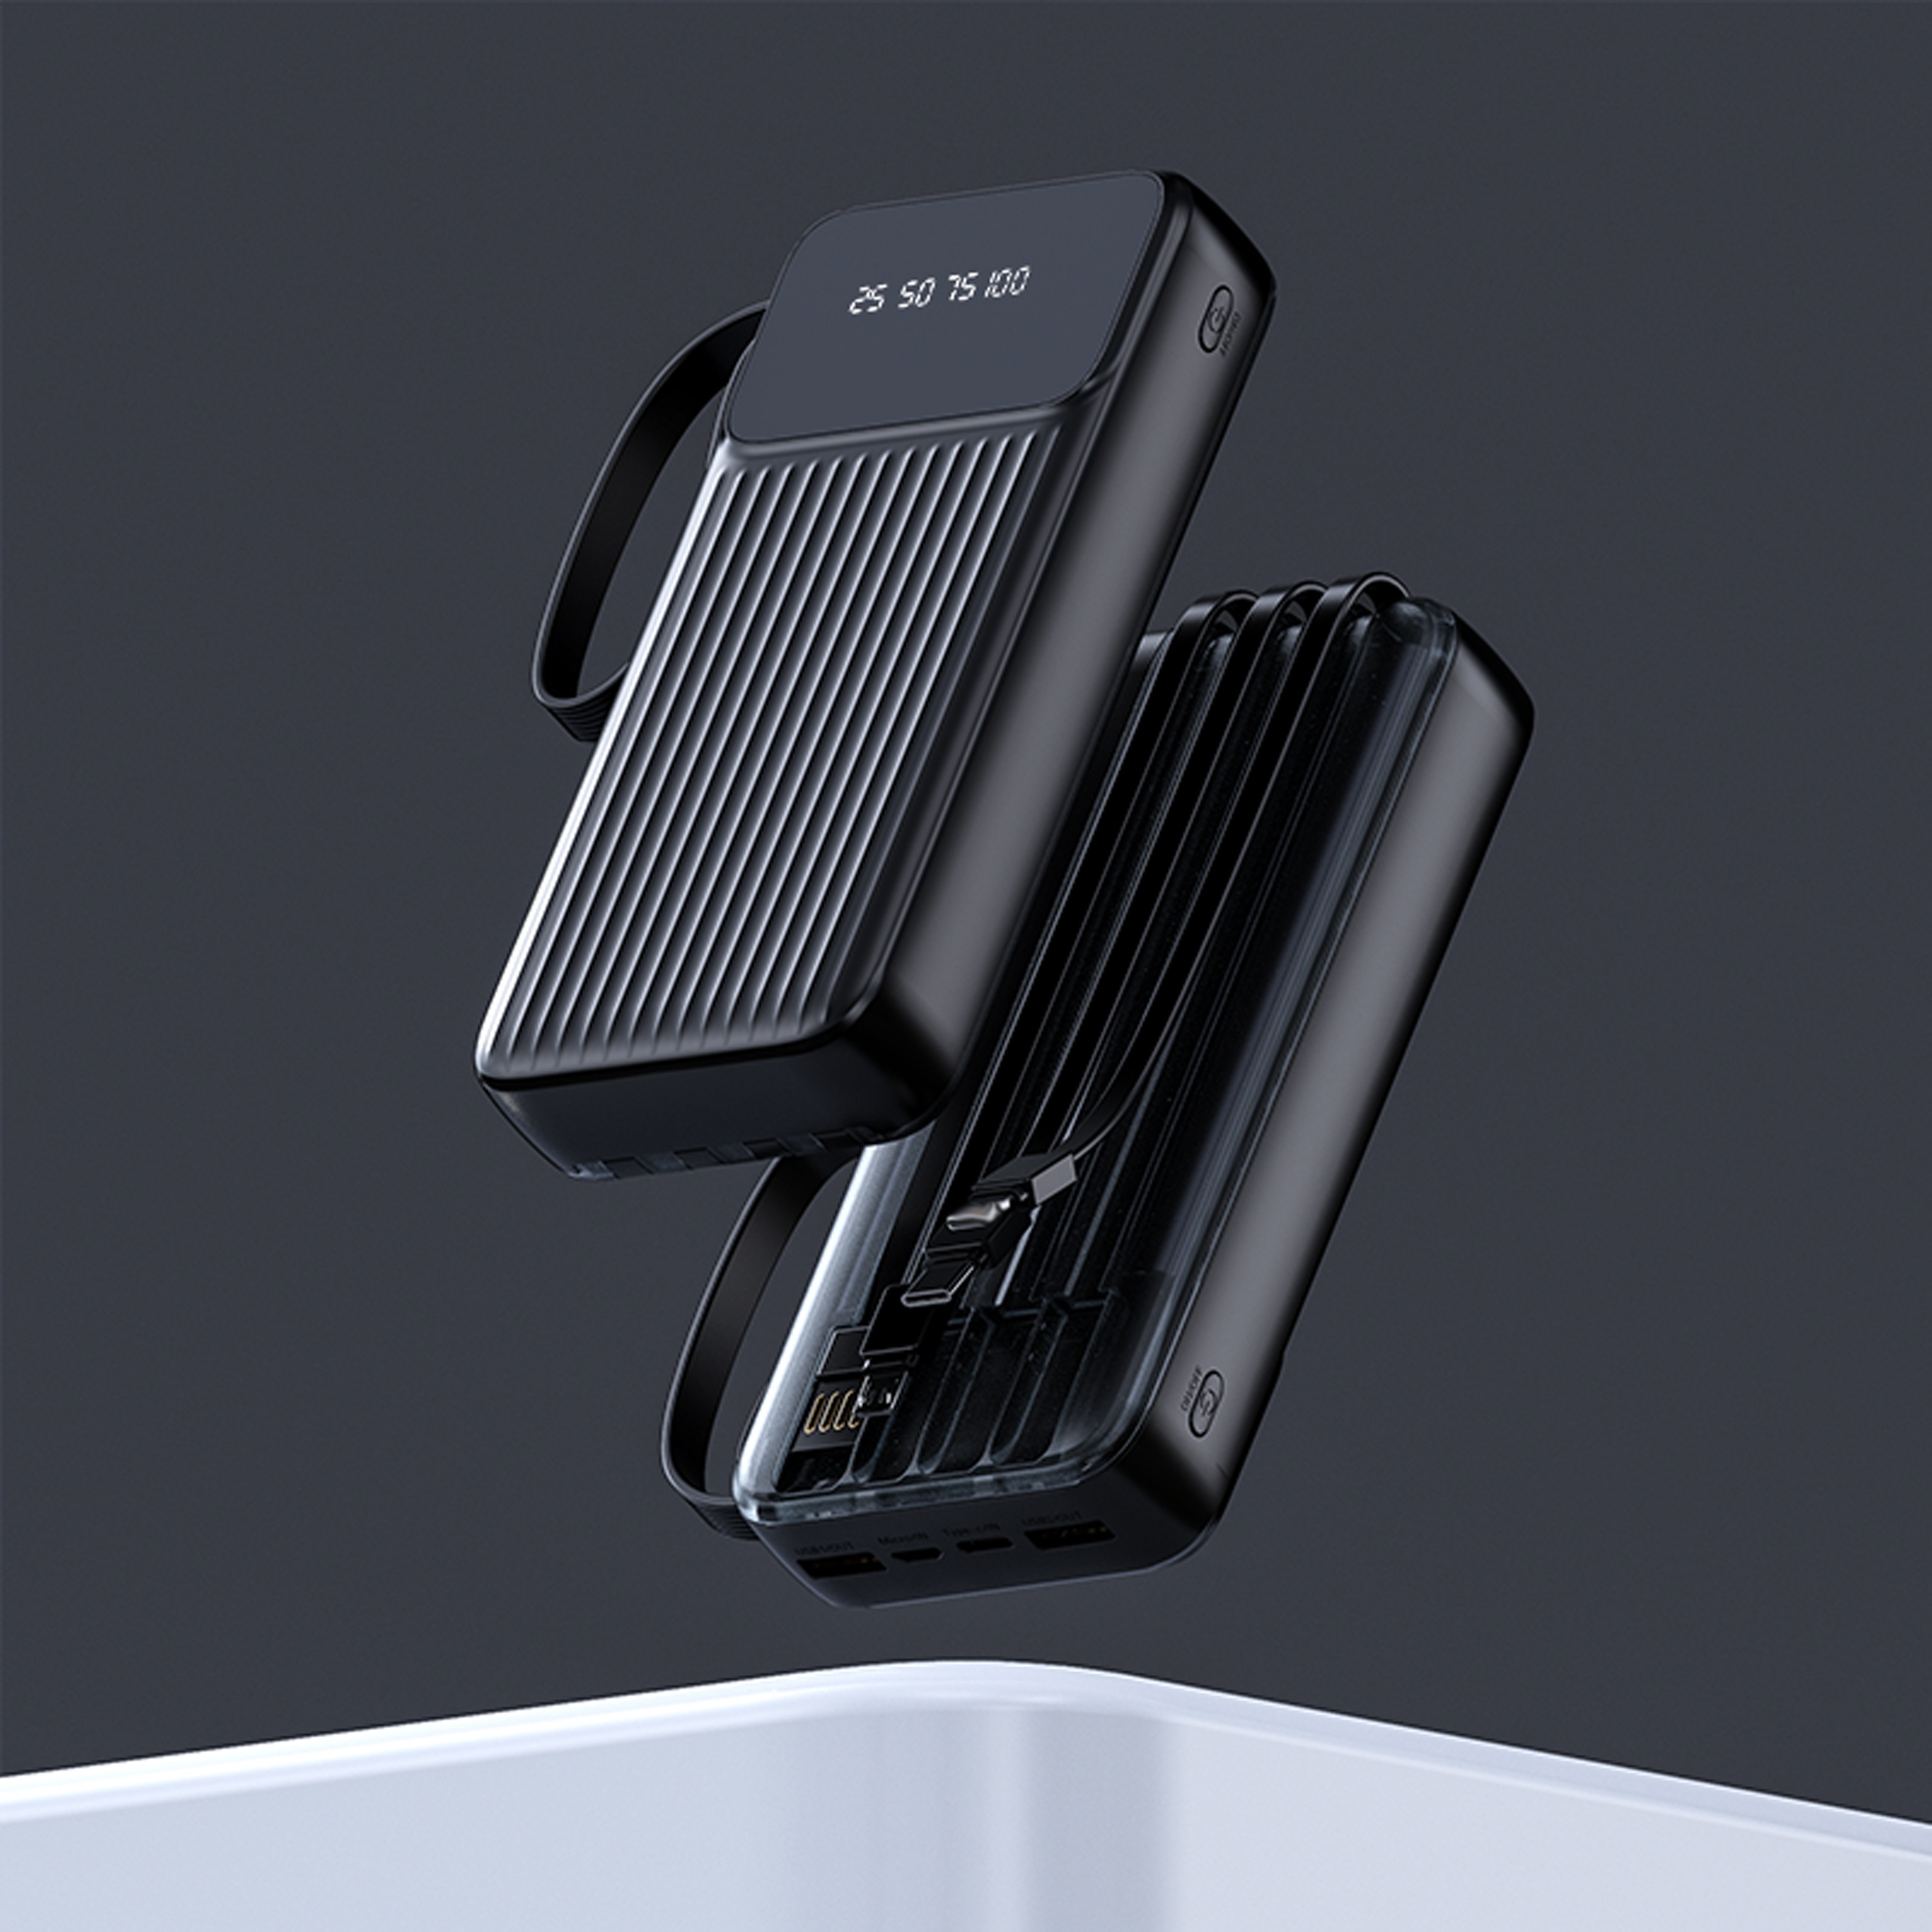 Cargador de energía solar Soxono de 30000 mAh Cargador portátil delgado y  ligero, 2 puertos USB Panel de alta velocidad Batería externa para iPhone